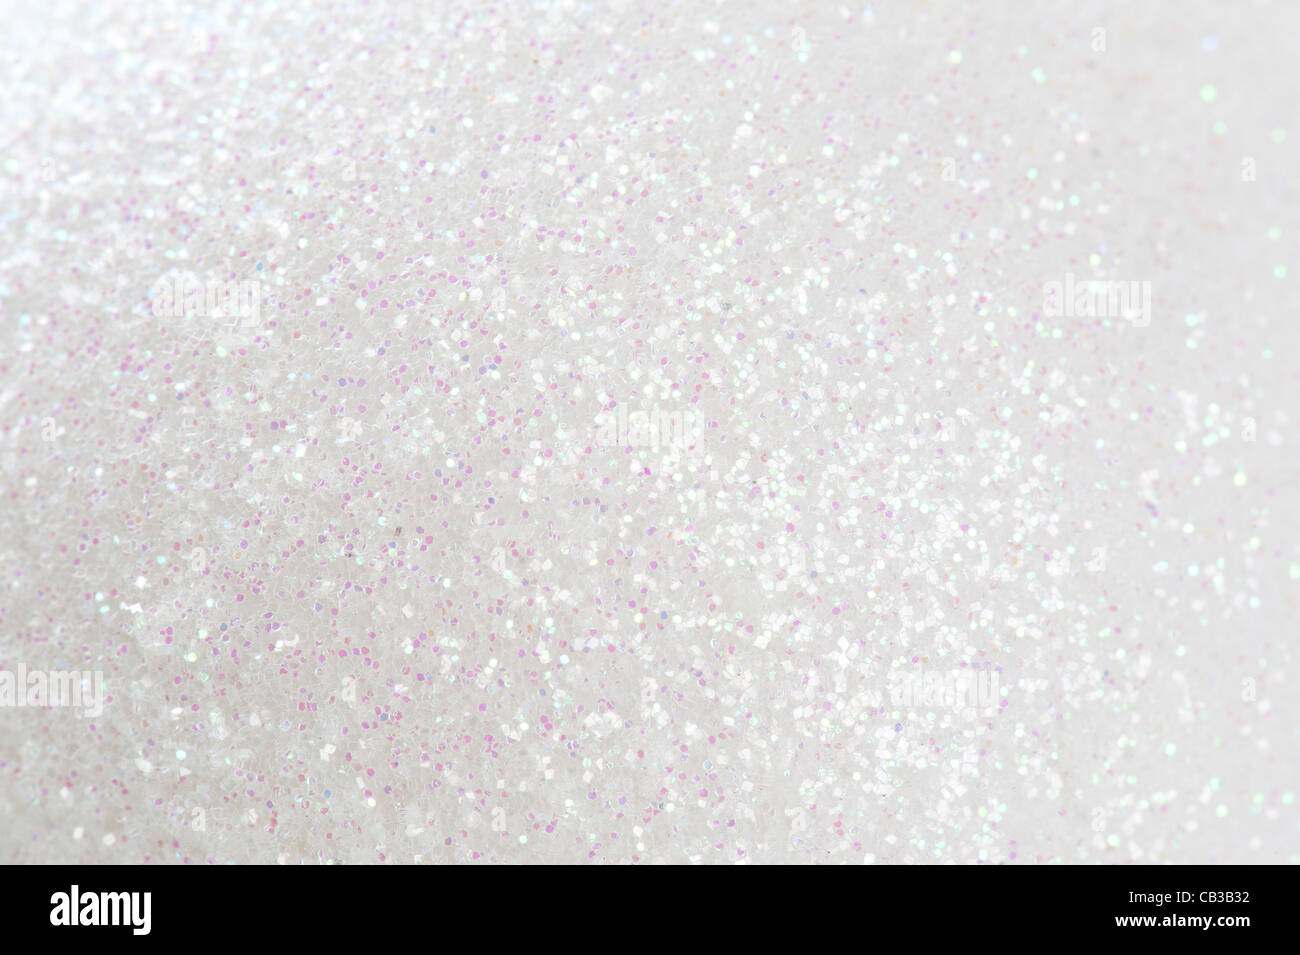 white glitter background